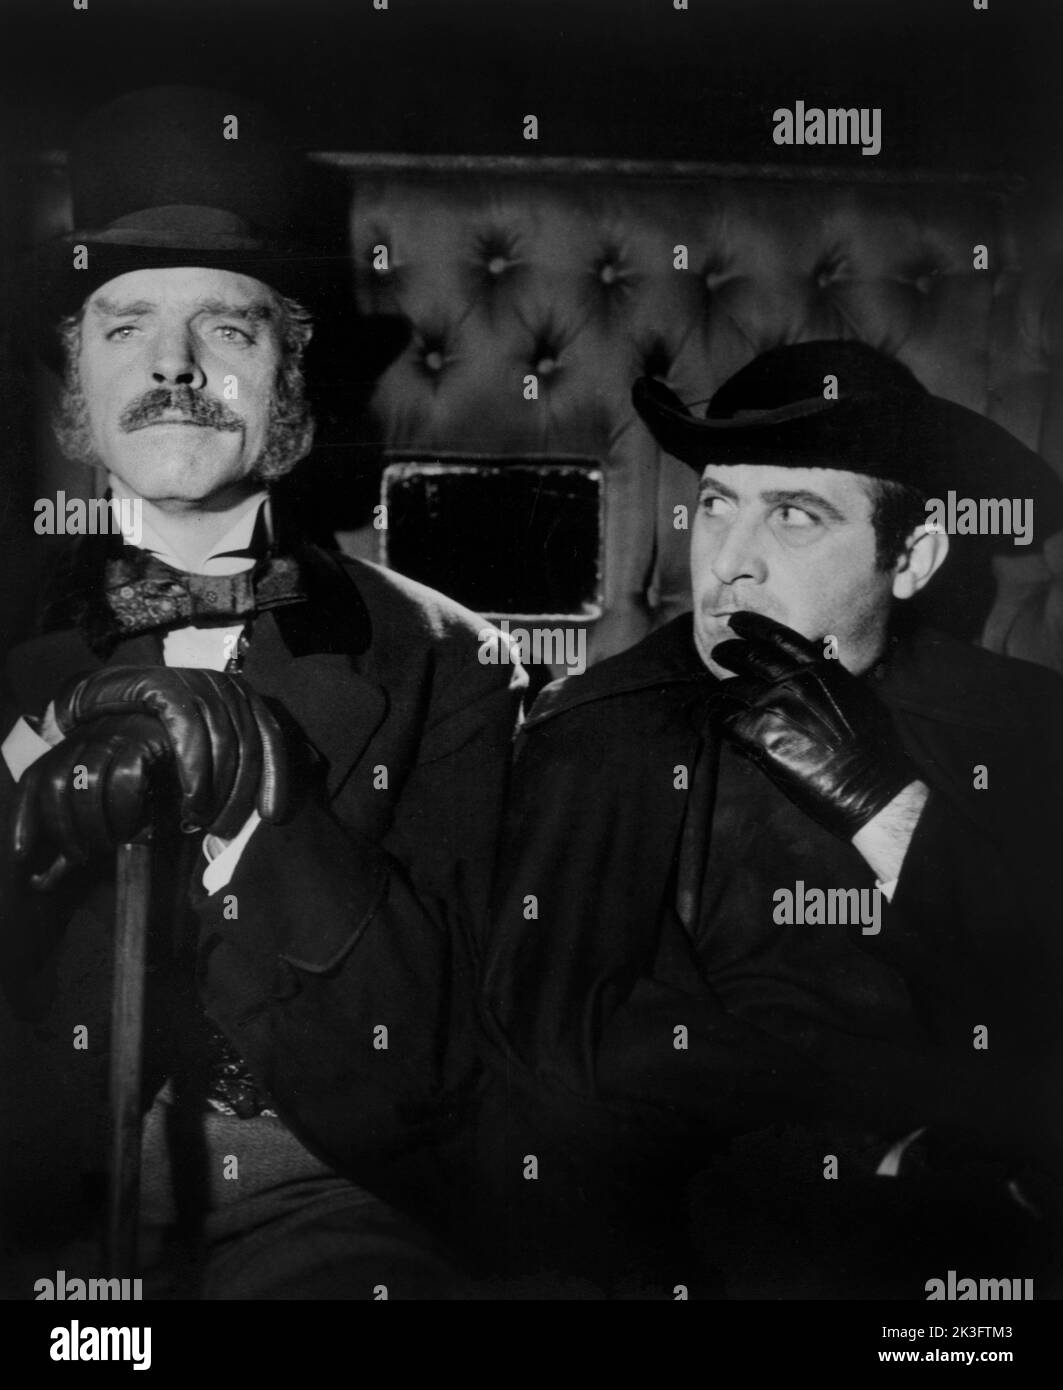 Burt Lancaster, (à gauche) sur le tournage du film, 'le léopard', italien : il Gattopardo, 20th Century-Fox, 1963 Banque D'Images